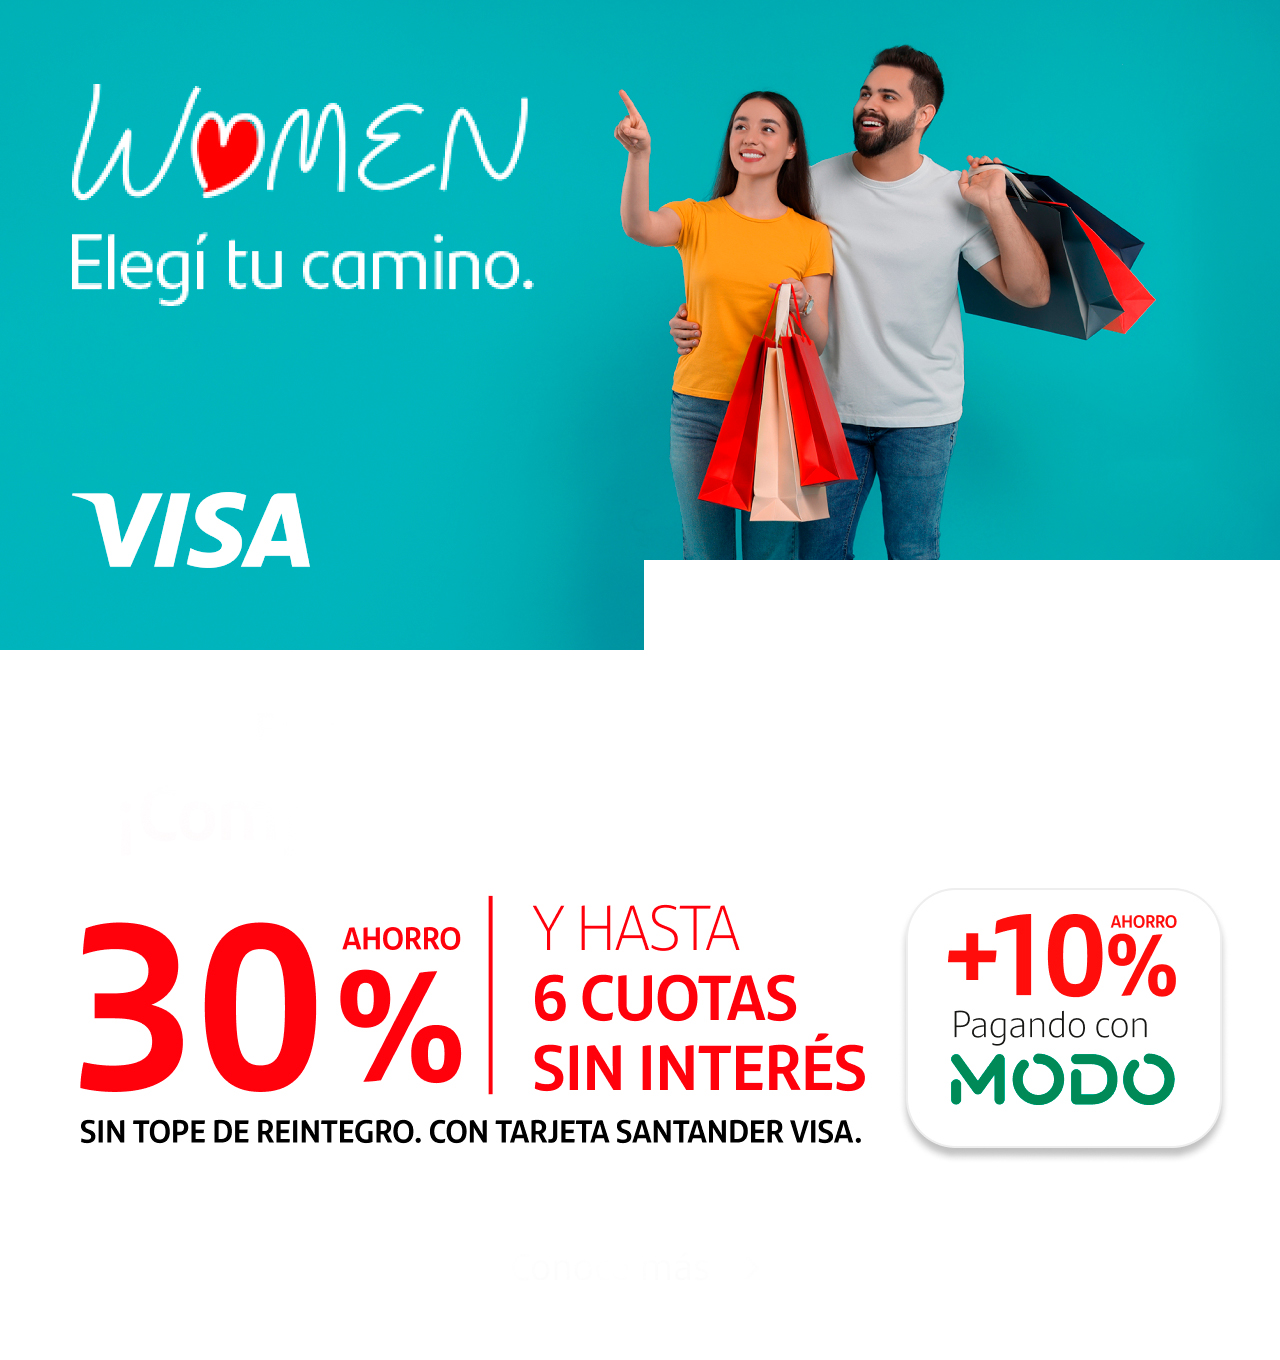 Disfrutá 30% de ahorro y 6 cuotas sin interés, además de un 10% adicional abonando con MODO con tus Tarjetas Santander Visa Women en las mejores marcas y shoppings.